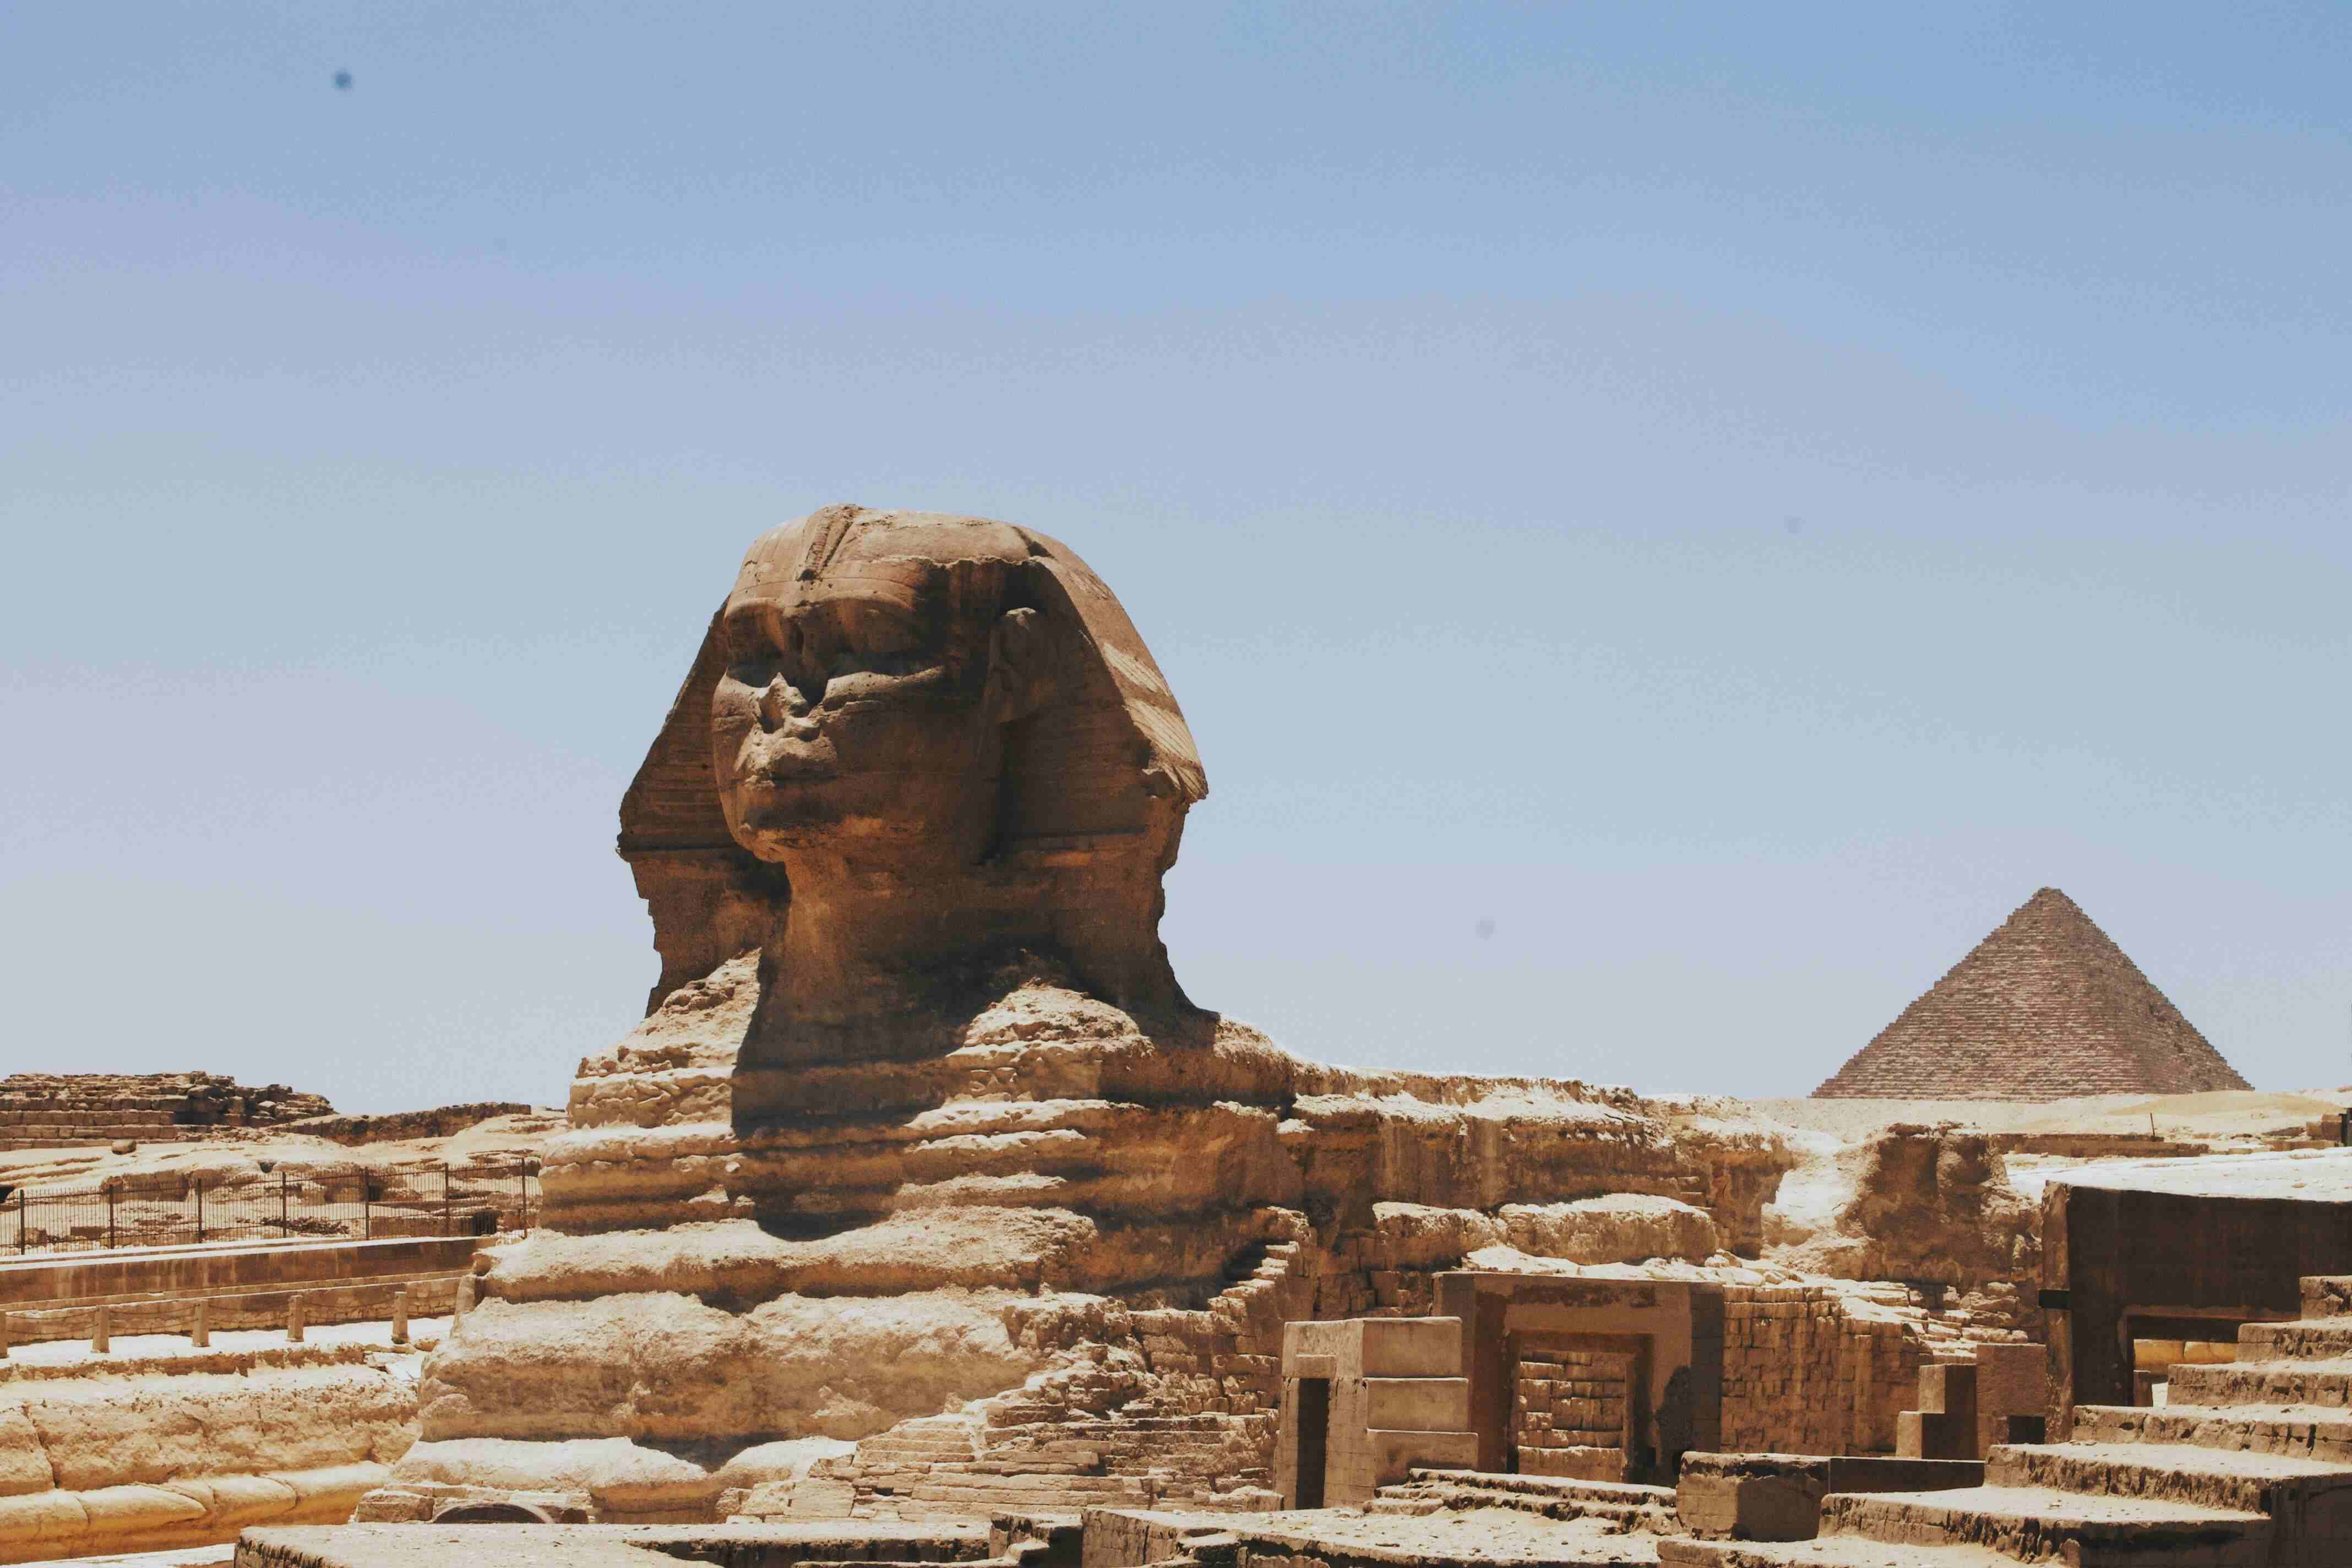 La gran esfinge de Giza